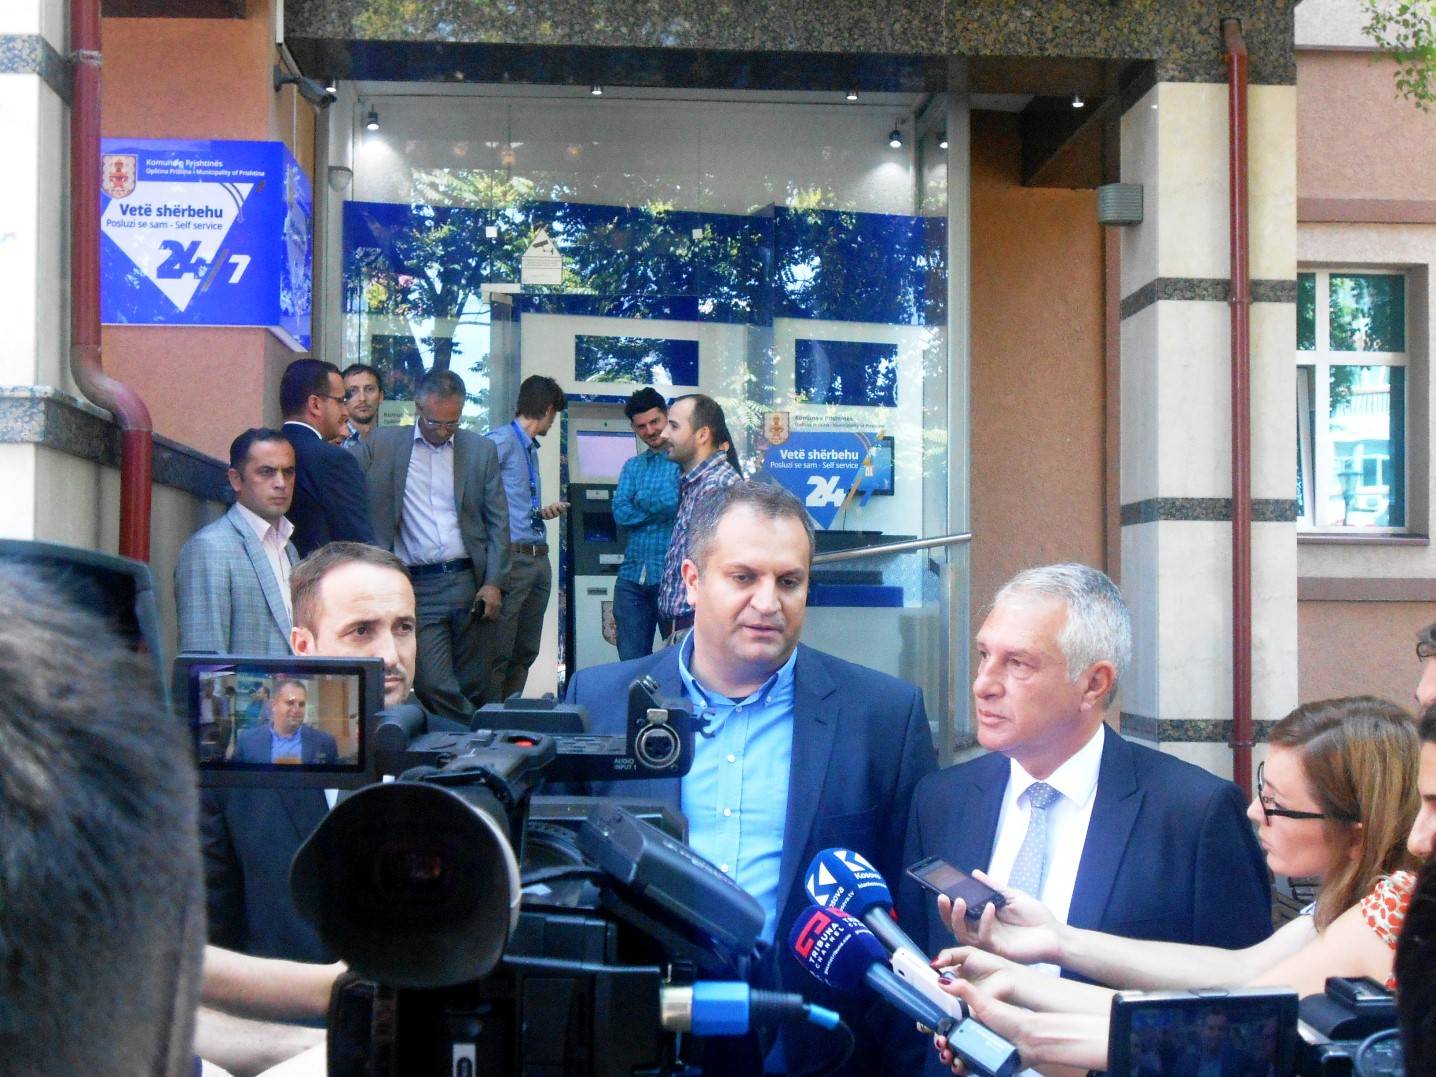 Komuna e Prishtinës bën përurimin e vetëshërbimit digjital 